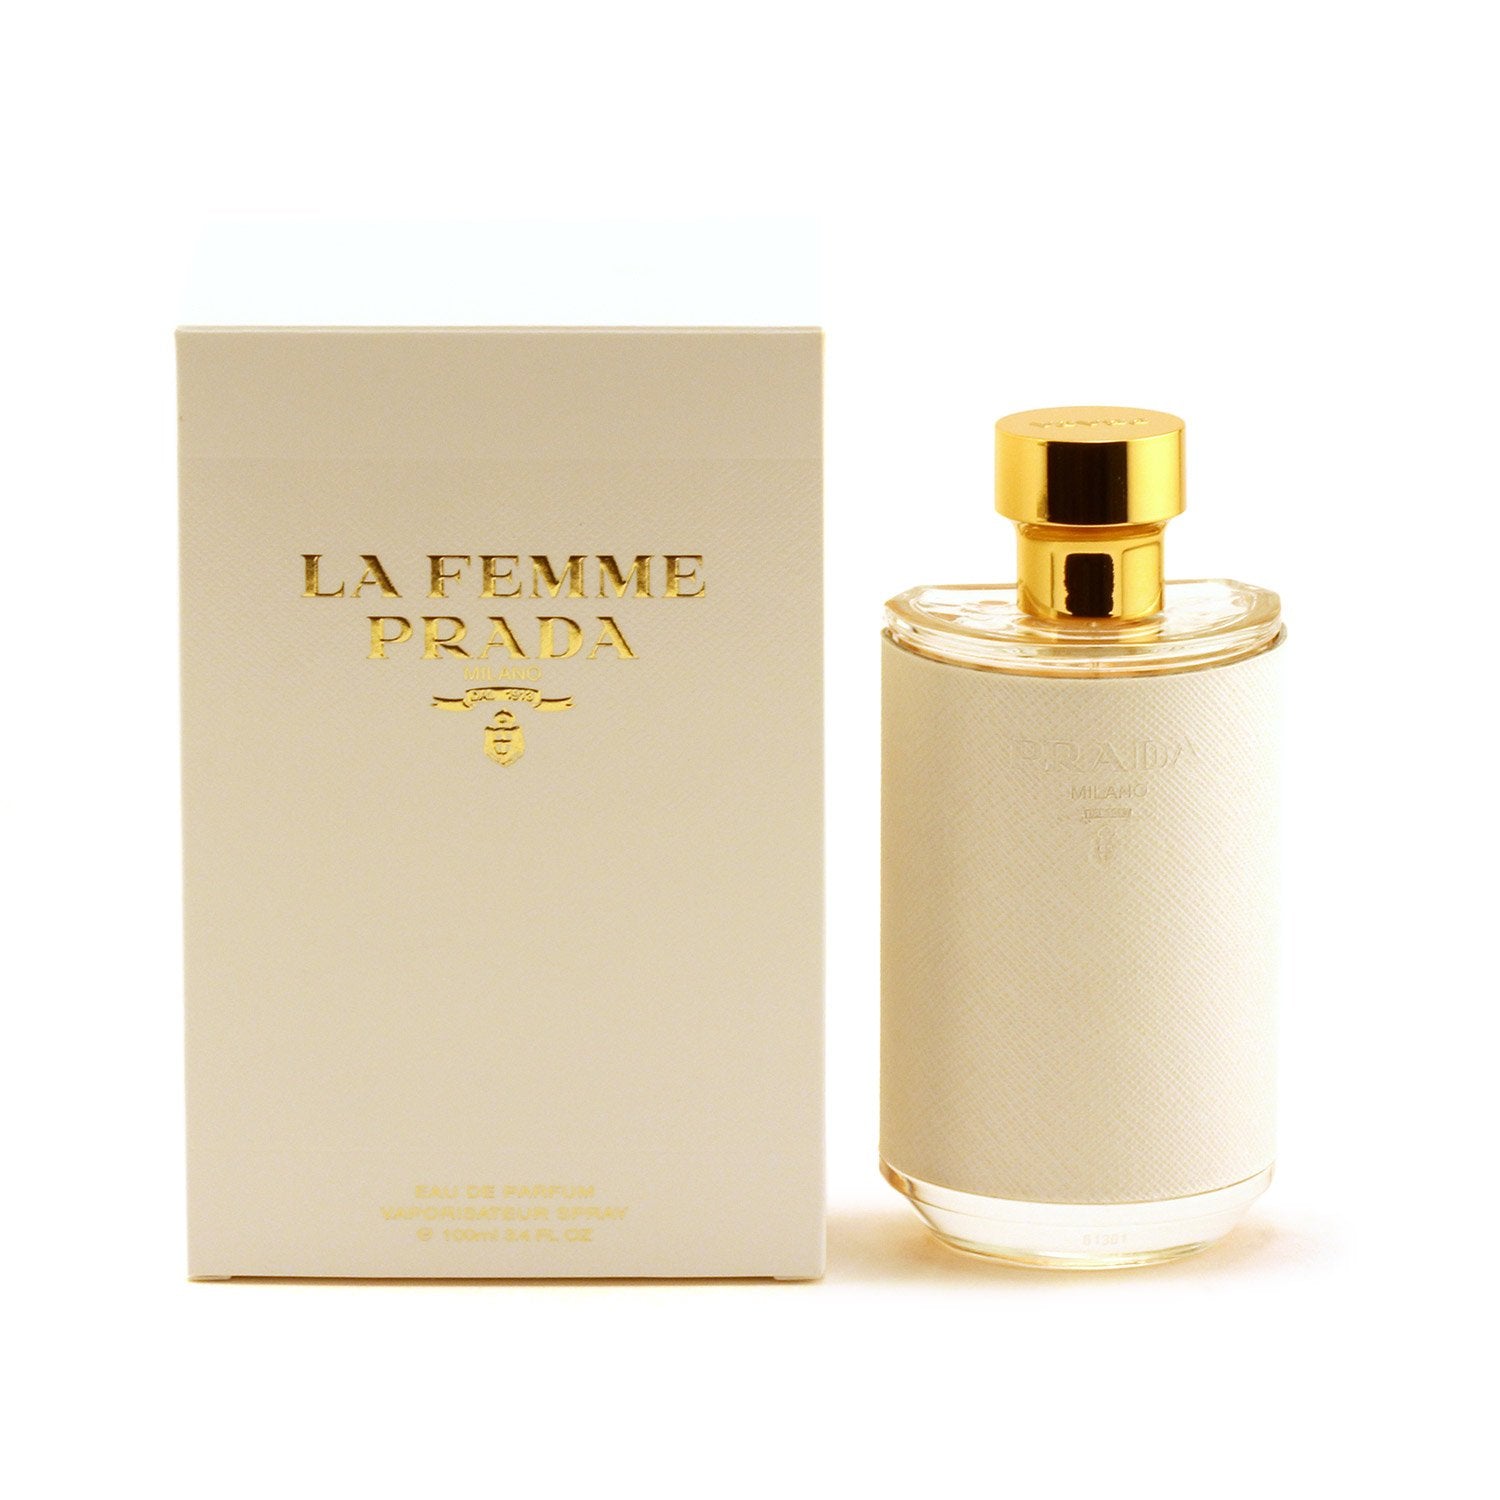 Perfume - PRADA LA FEMME FOR WOMEN - EAU DE PARFUM SPRAY, 3.4 OZ